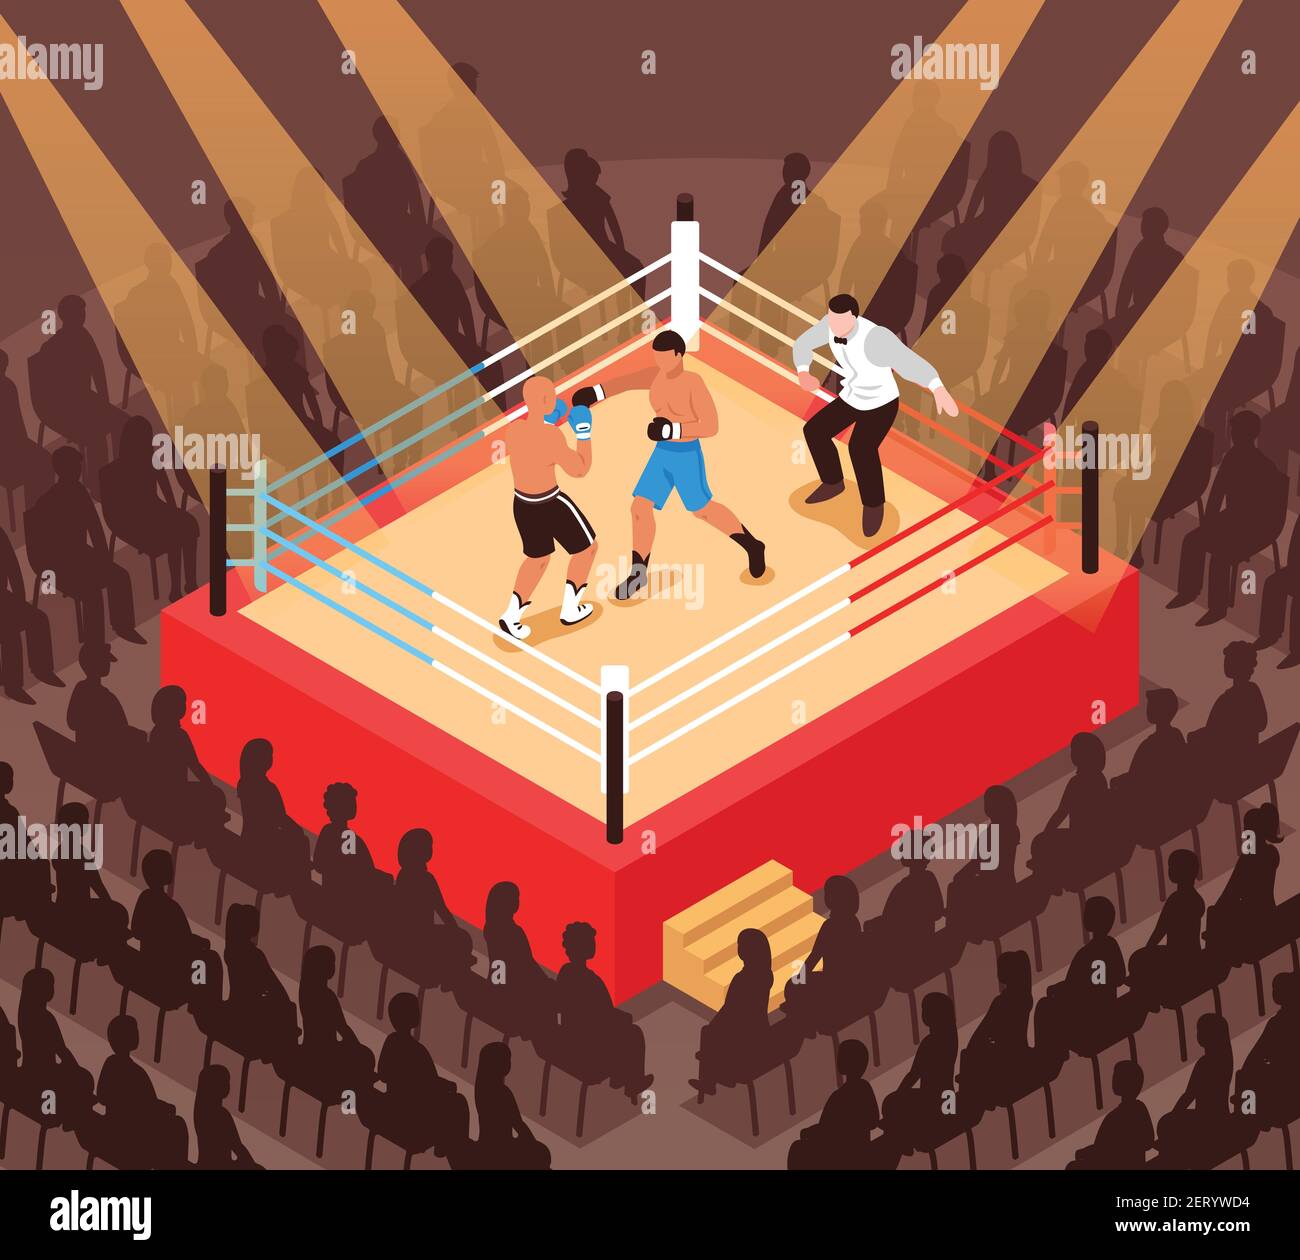 Schiedsrichter und Kämpfer während des Boxkampfes auf Ring und Silhouetten Von Zuschauern isometrische Vektor-Illustration Stock Vektor